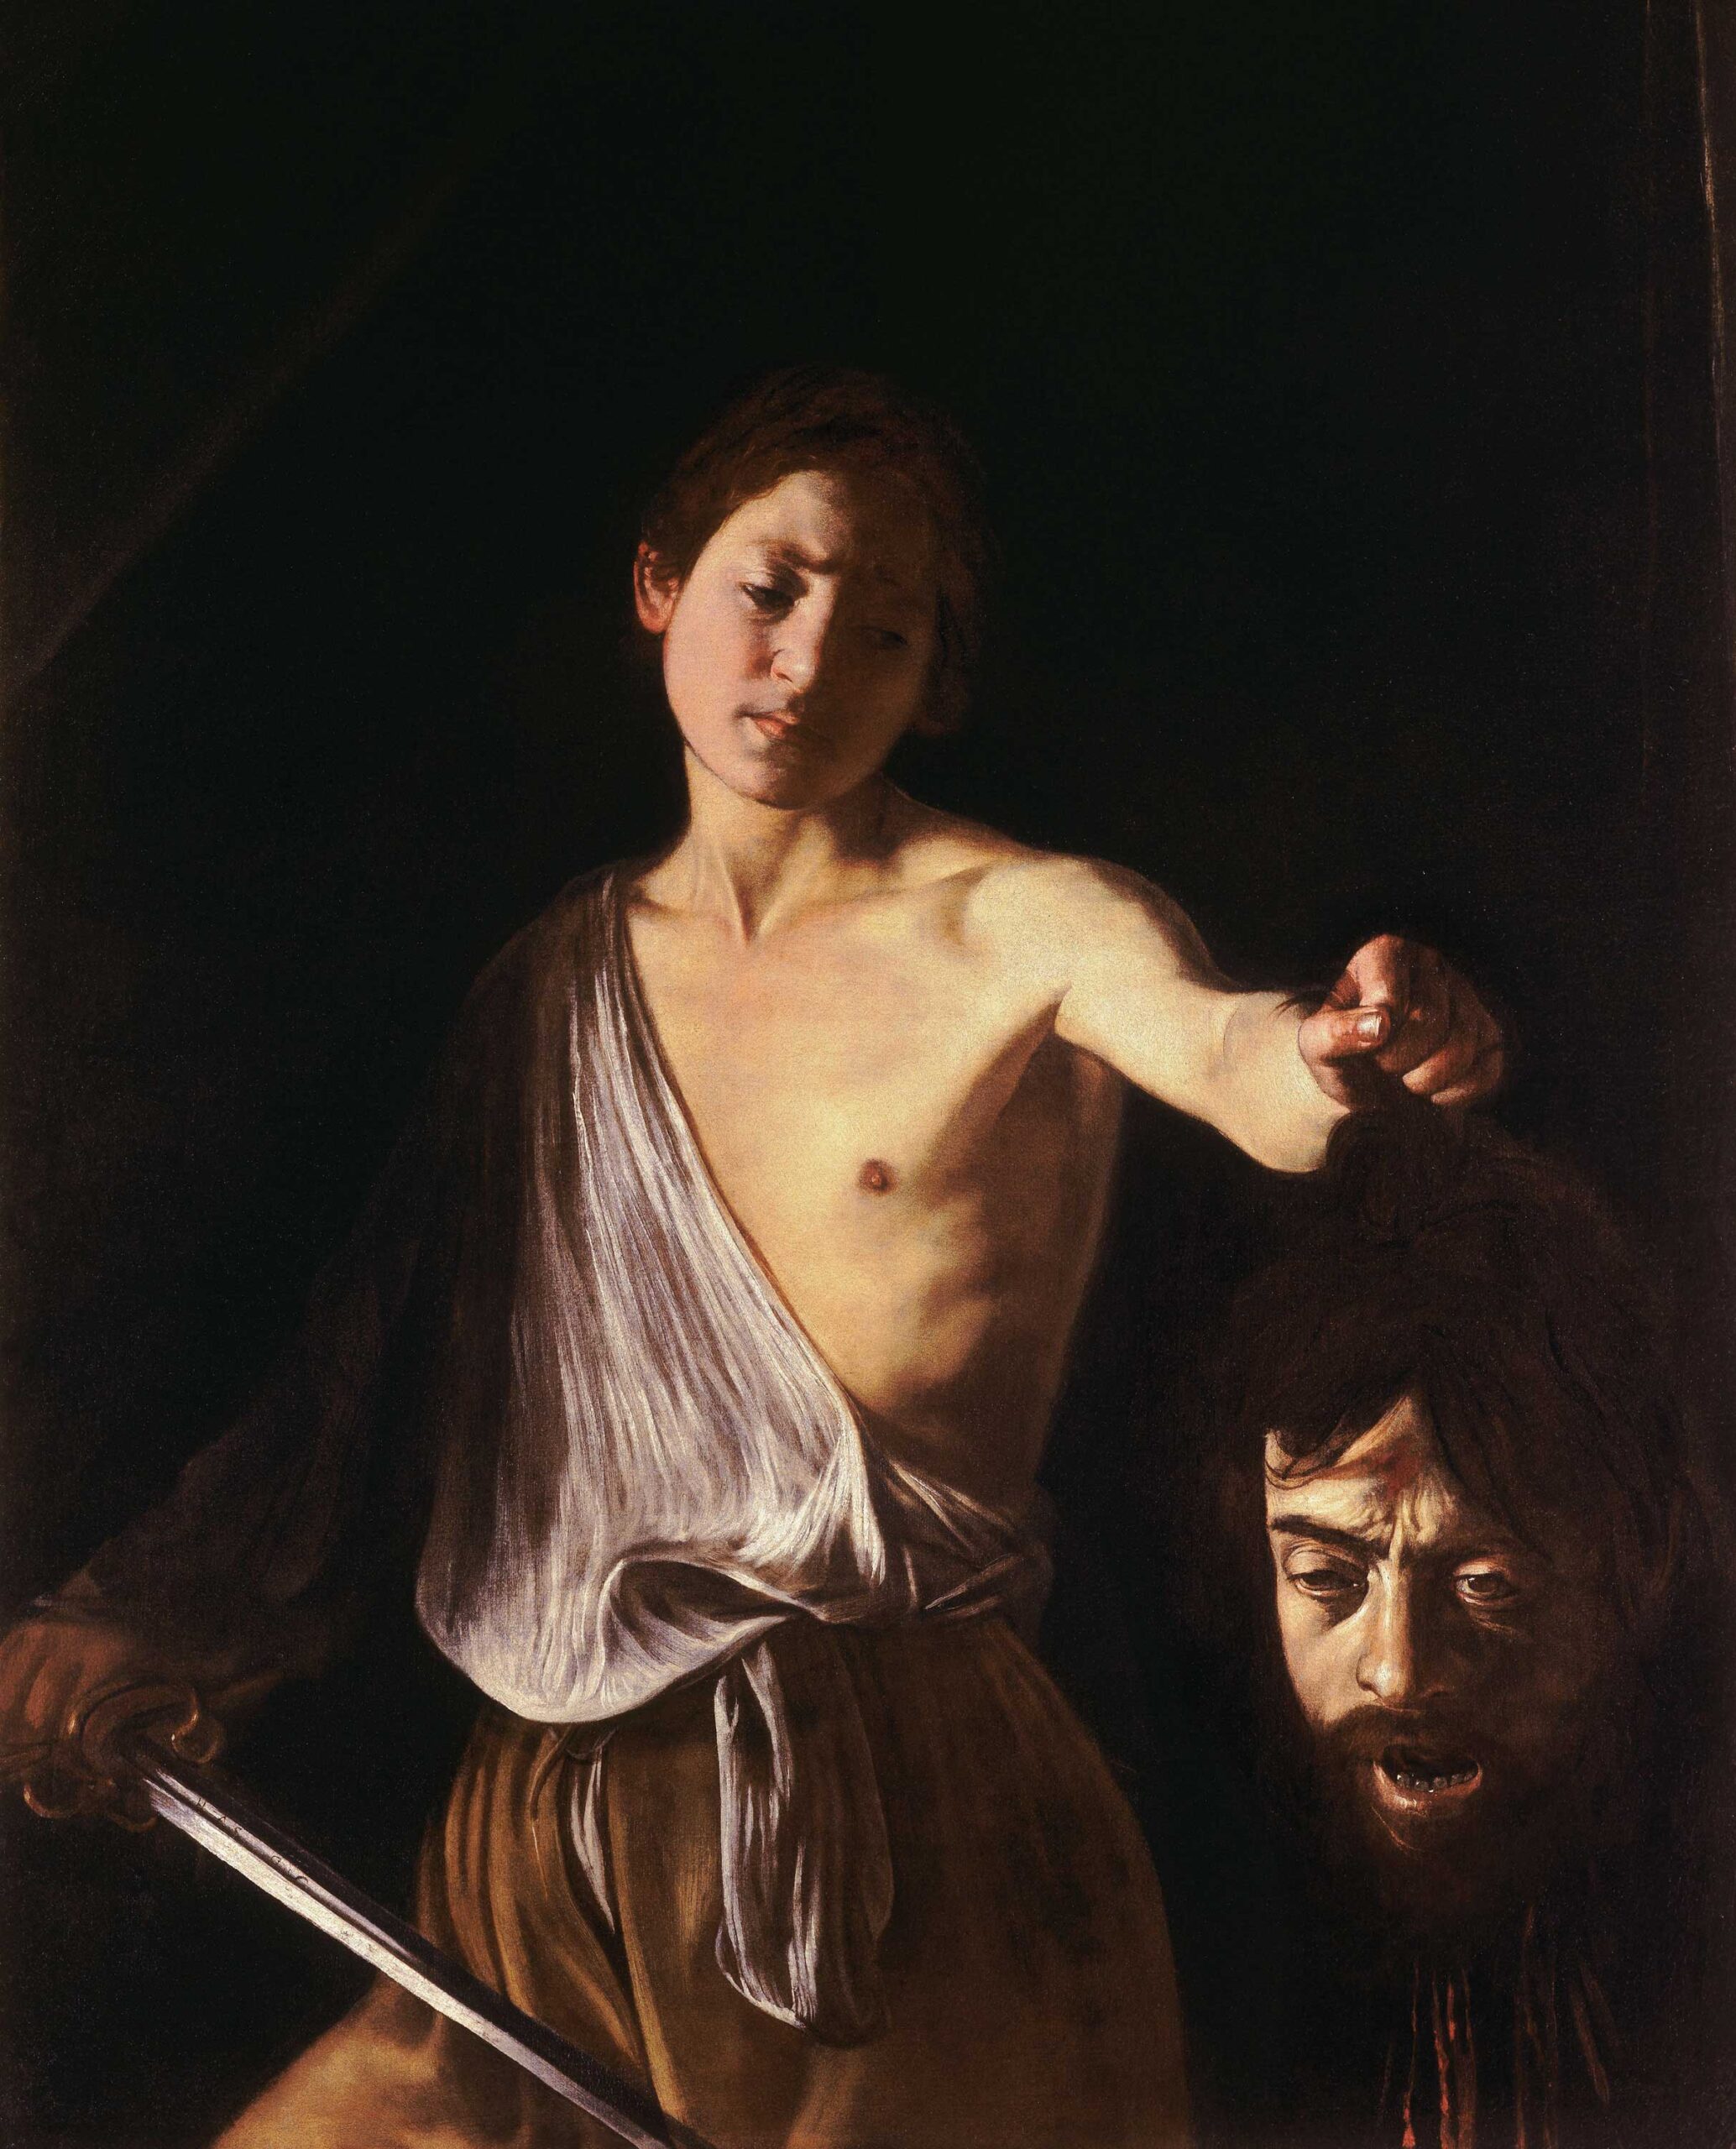 Michelangelo Merisi Da Caravaggio (1571–1610), "David with the Head of Goliath," 1606–07, oil on canvas, 49 1/4 x 39 3/4 in., Galleria Borghese, Rome